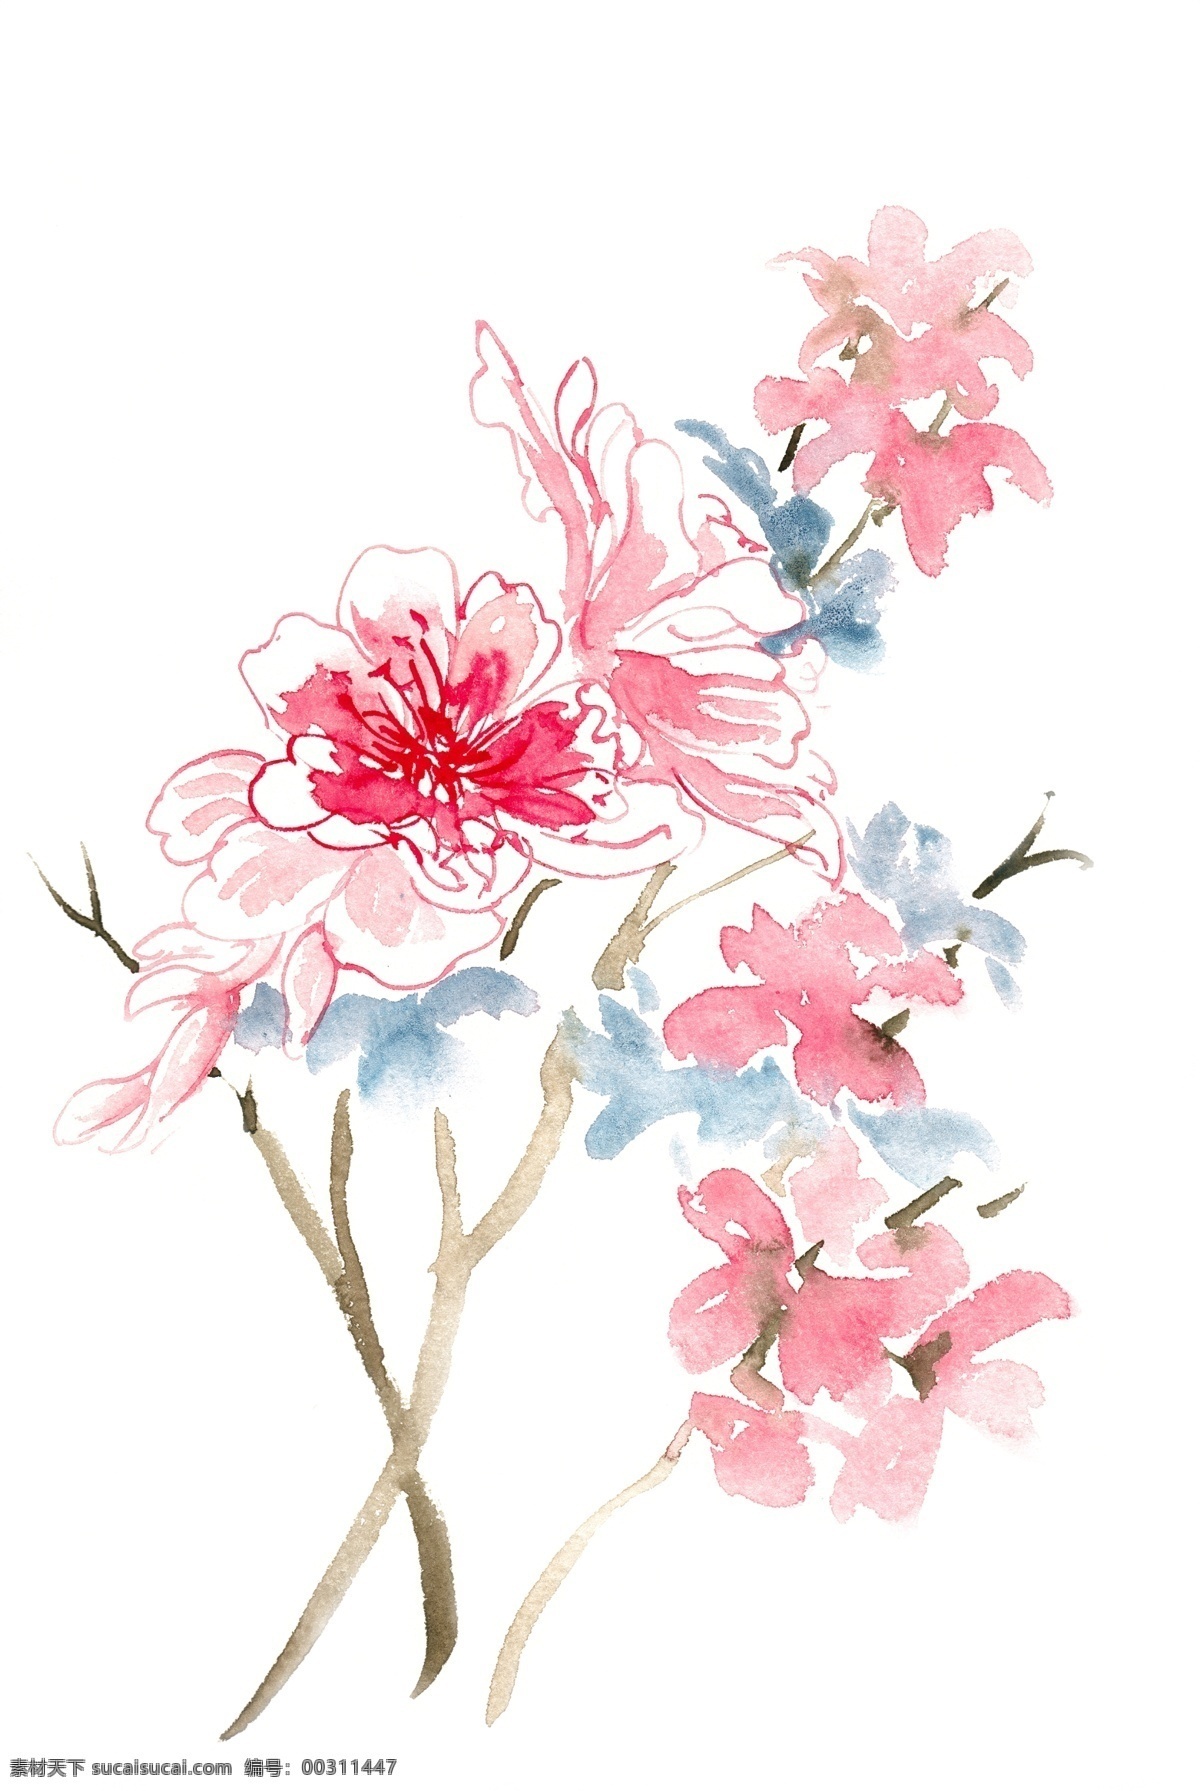 粉红色 花朵 水彩画 免 抠 淡雅 花卉 植物 意境 简约 水彩 透明 手绘 粉红 优美 写意 免抠 亮丽 清幽 绘画 逼真 写实